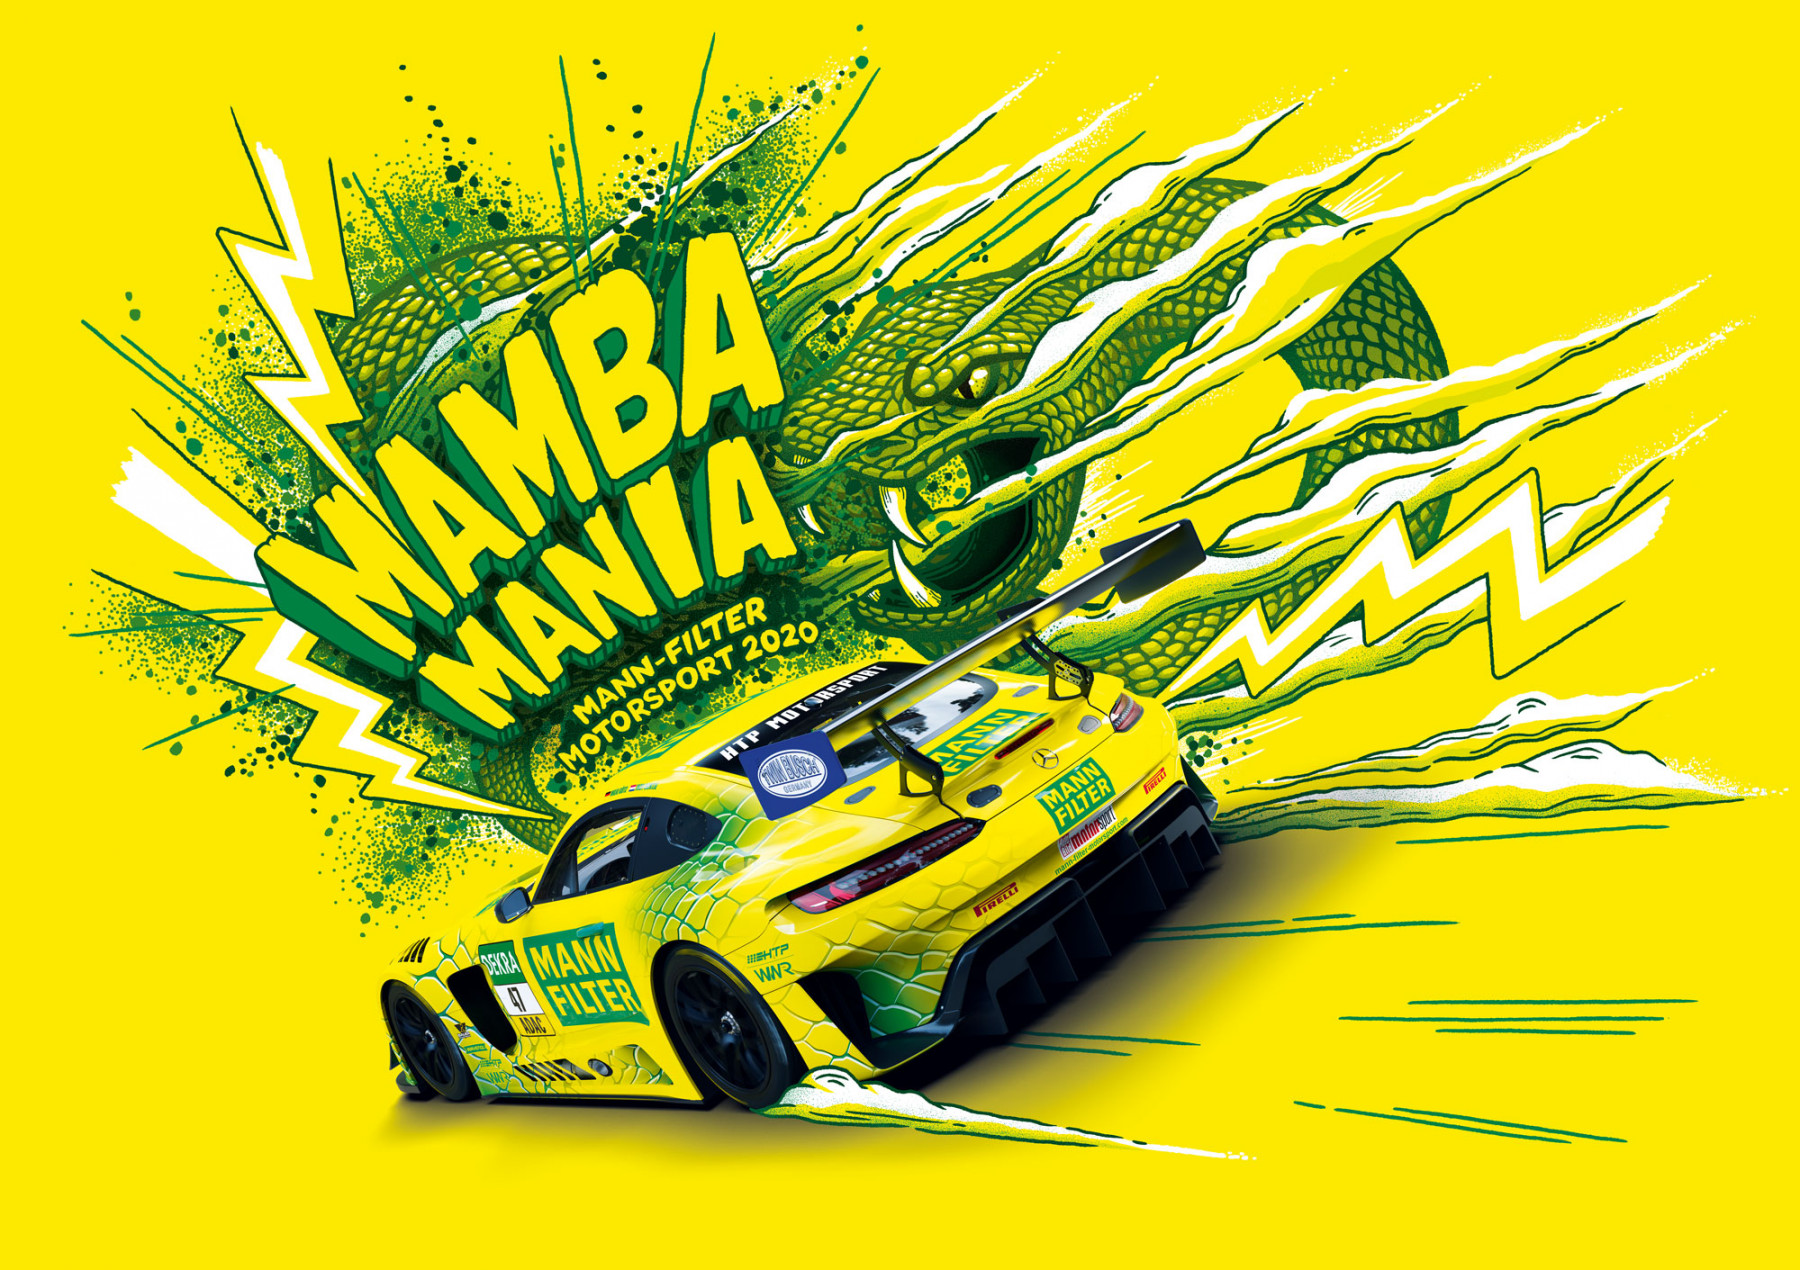 Mann-Filter. Mamba Mania. Motorsport 2020 2